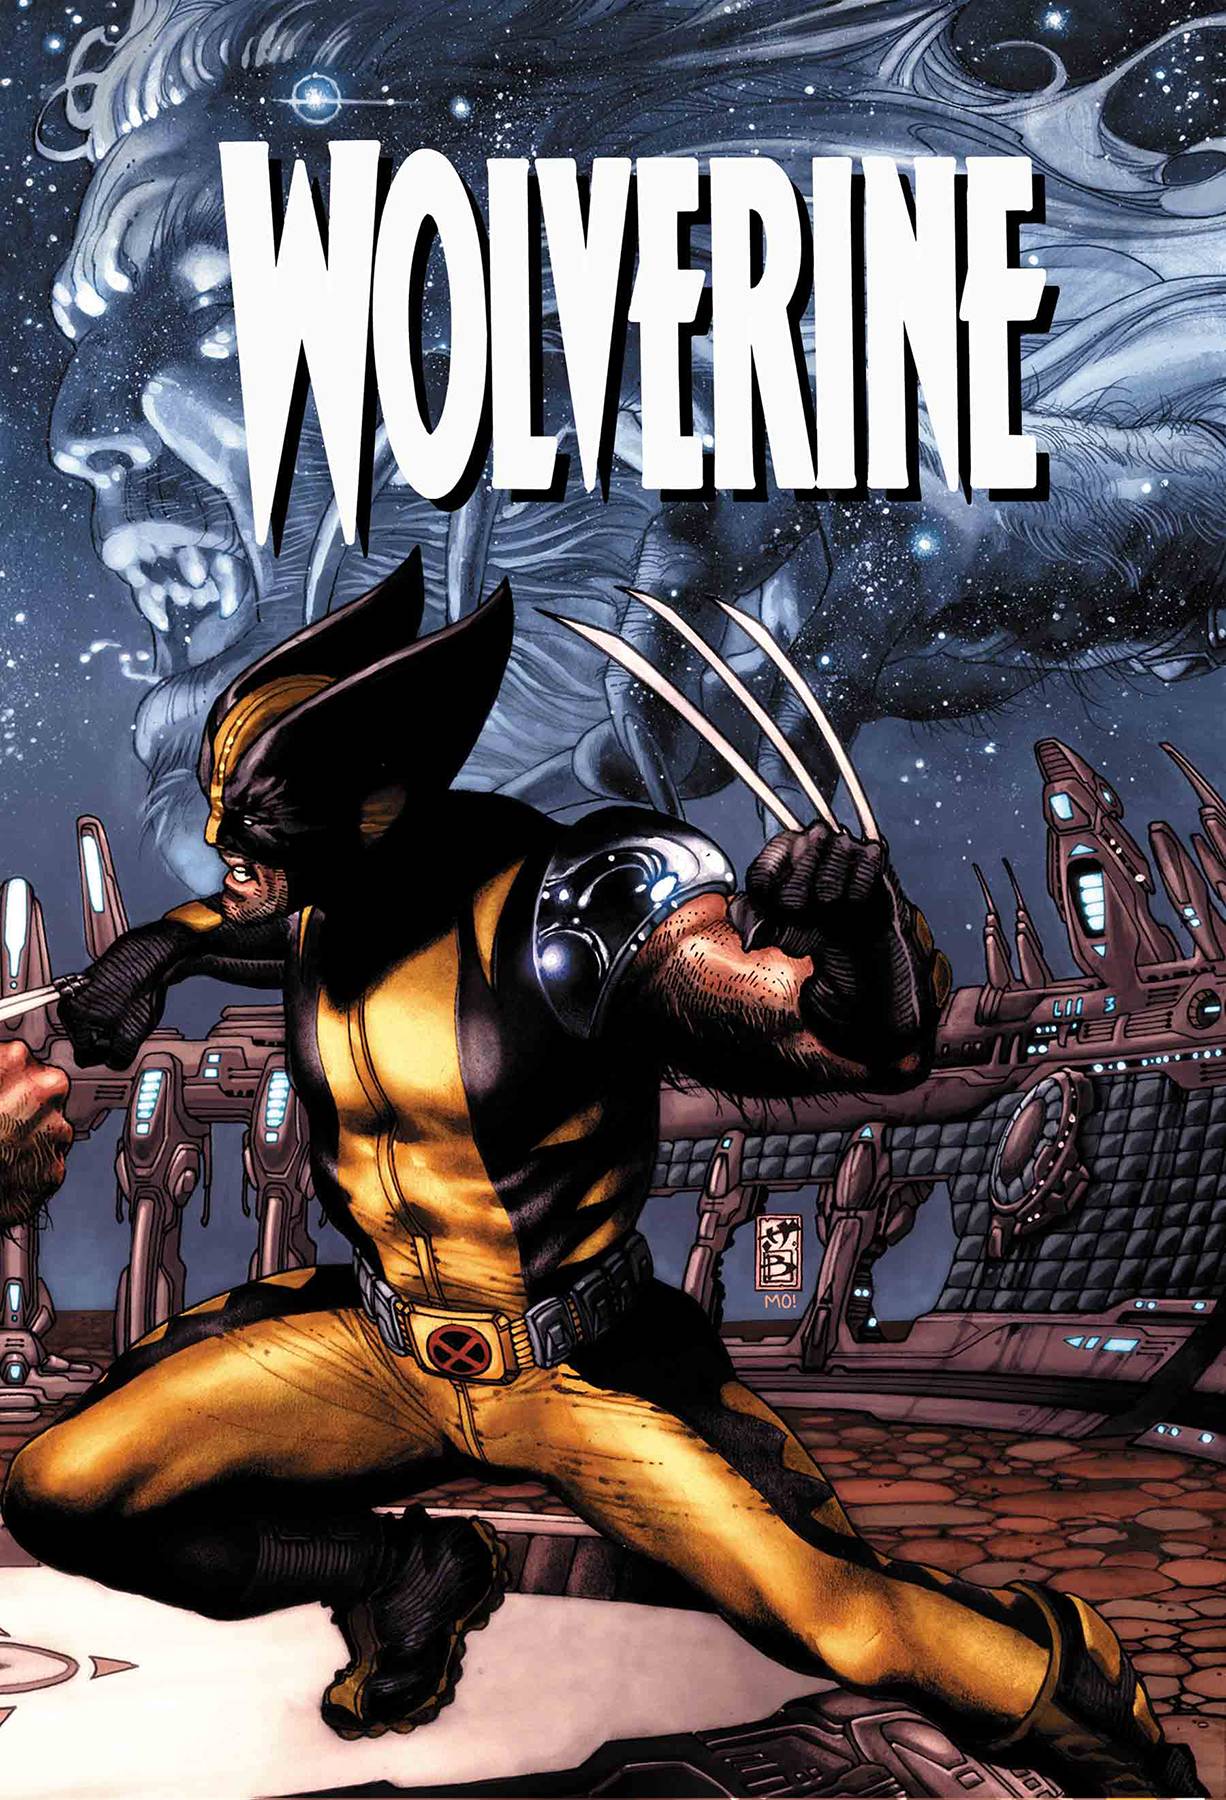 True Believers Wolverine Evolution #1